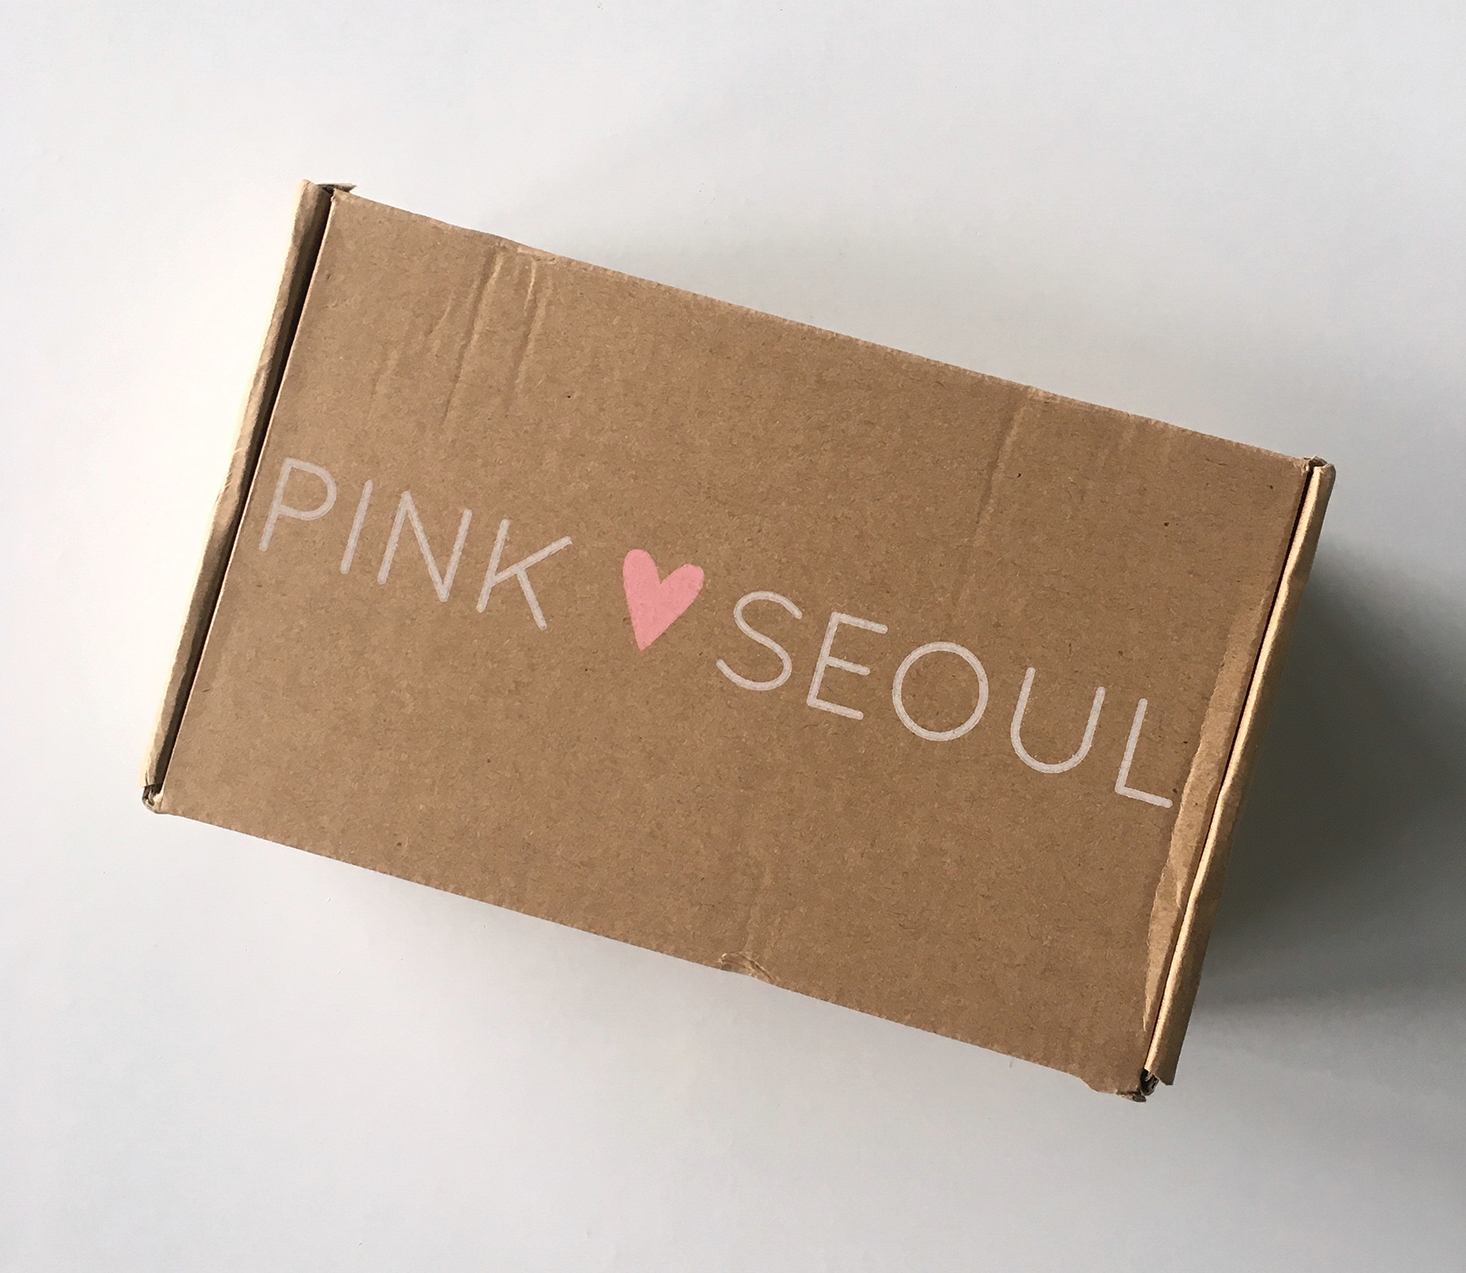 pinkseoul-mask-box-november-2016-box